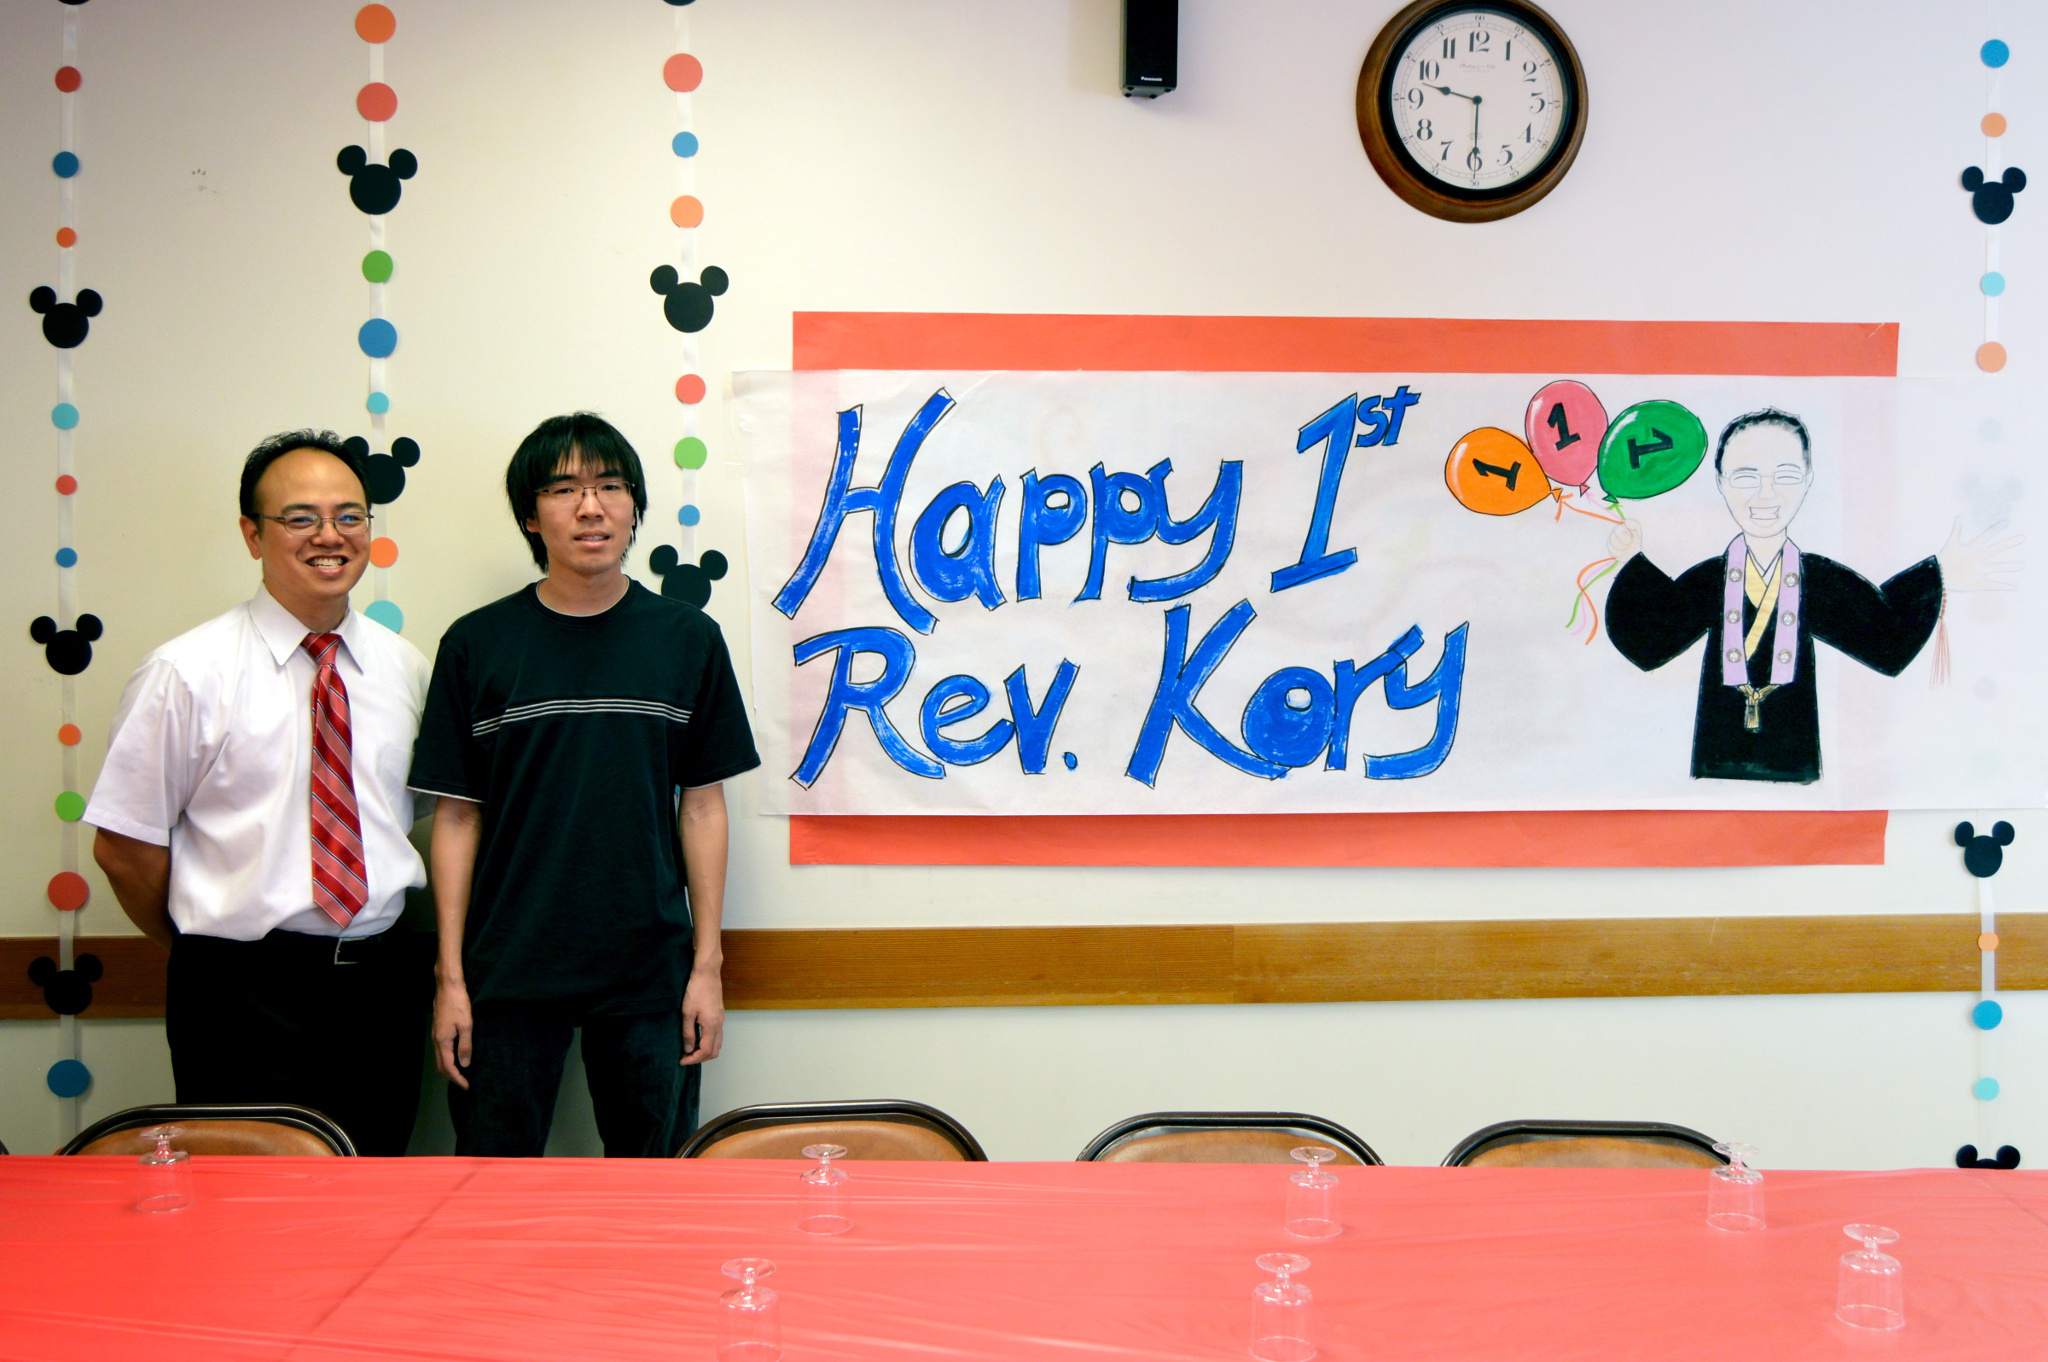 Rev. Kory's 1 Year Anniversary